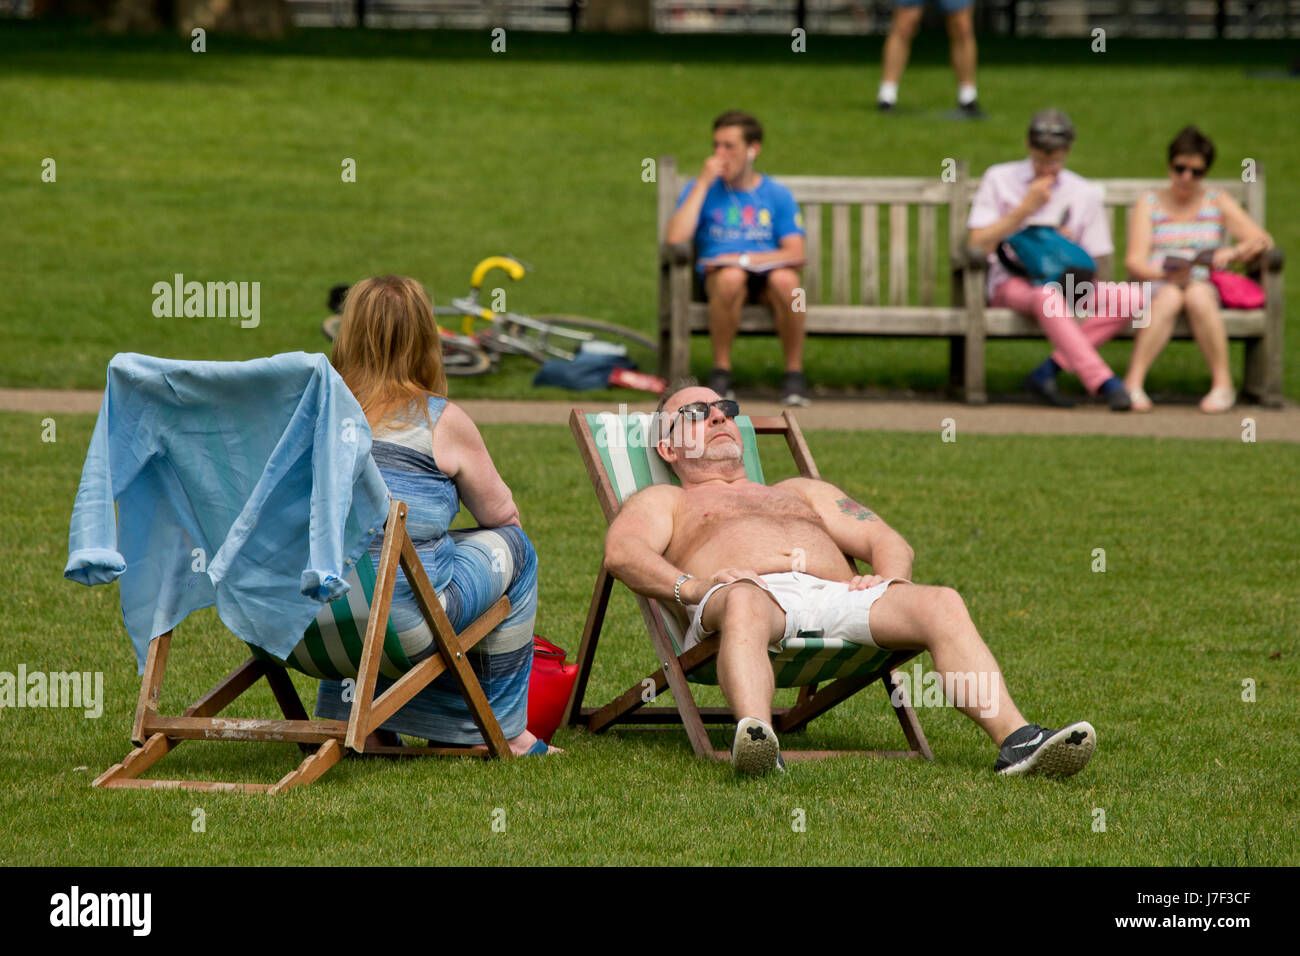 Londres, Royaume-Uni. 25 mai, 2017. 25 mai, 2017. Les personnes bénéficiant du soleil à St James Park, Londres Crédit : Sebastian Remme/Alamy Live News Banque D'Images